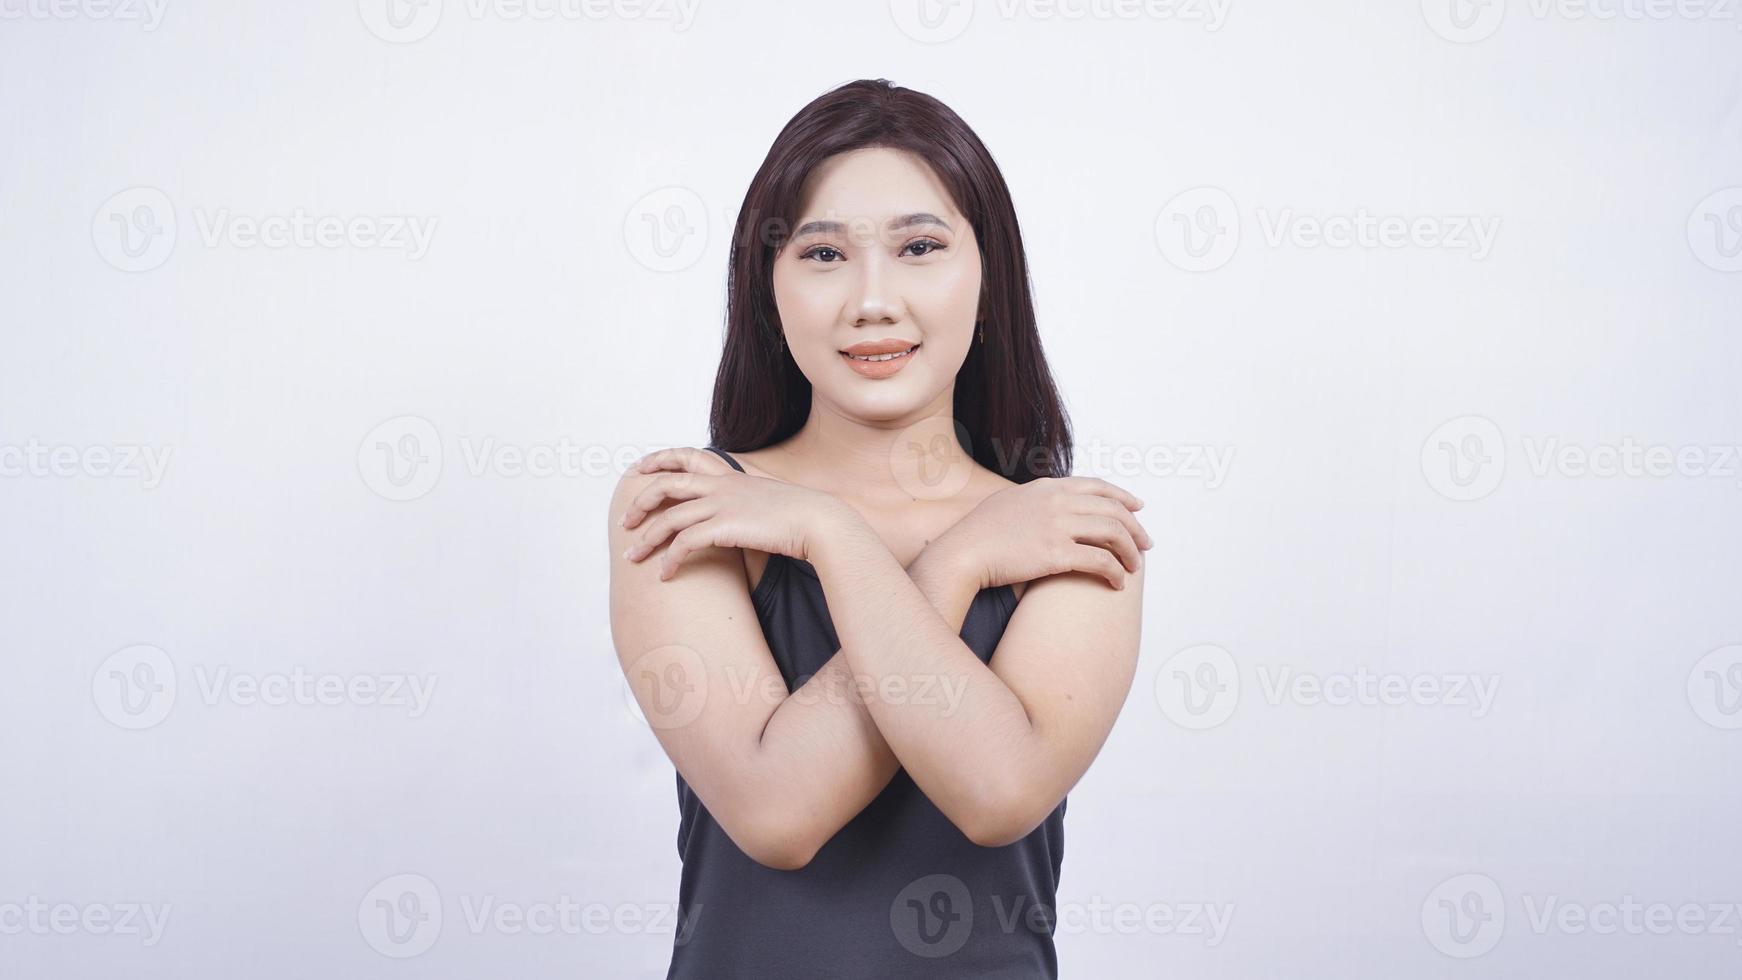 La belleza asiática muestra su rostro maquillado aislado de fondo blanco foto